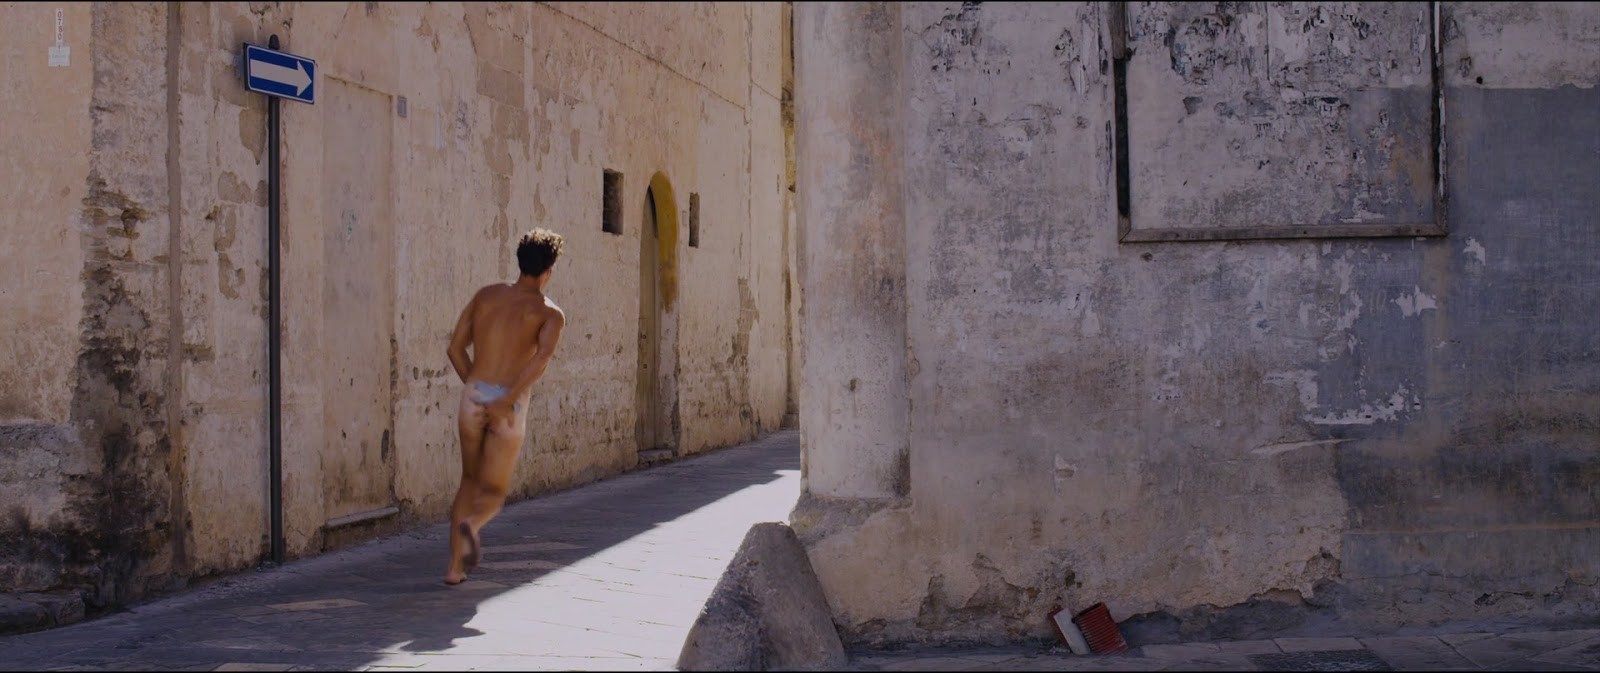 Giulio Berruti in "Walking on Sunshine" (2014) .